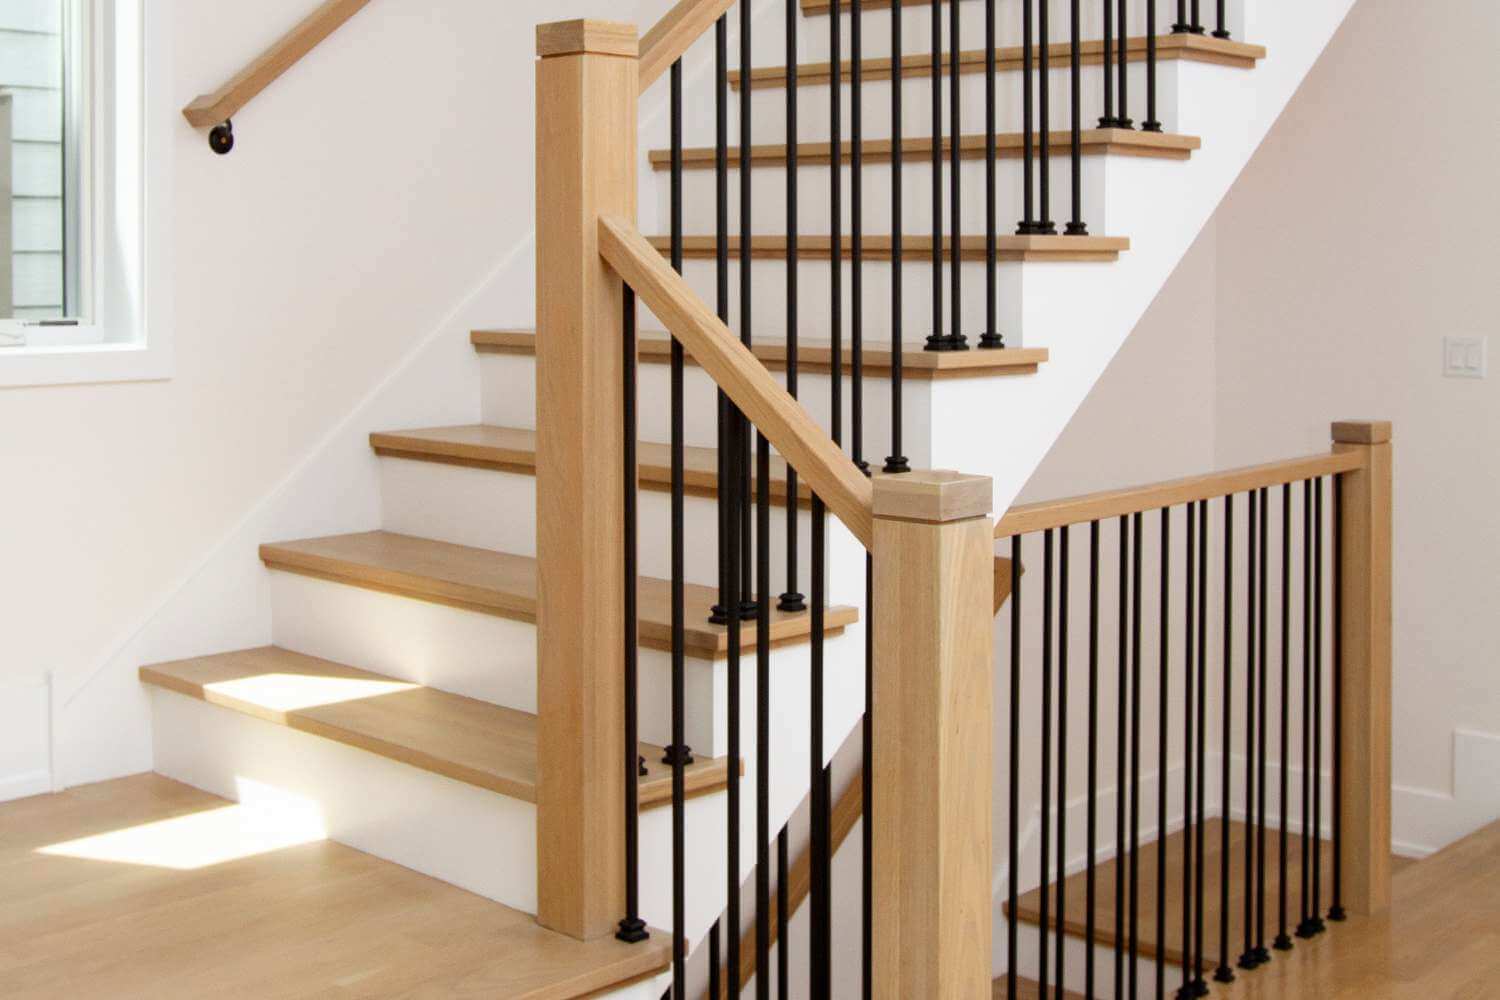 Độ dốc cầu thang tiêu chuẩn từ 18 -45 độ, với các dạng cầu thang xoắn ốc thì khoảng 45 độ